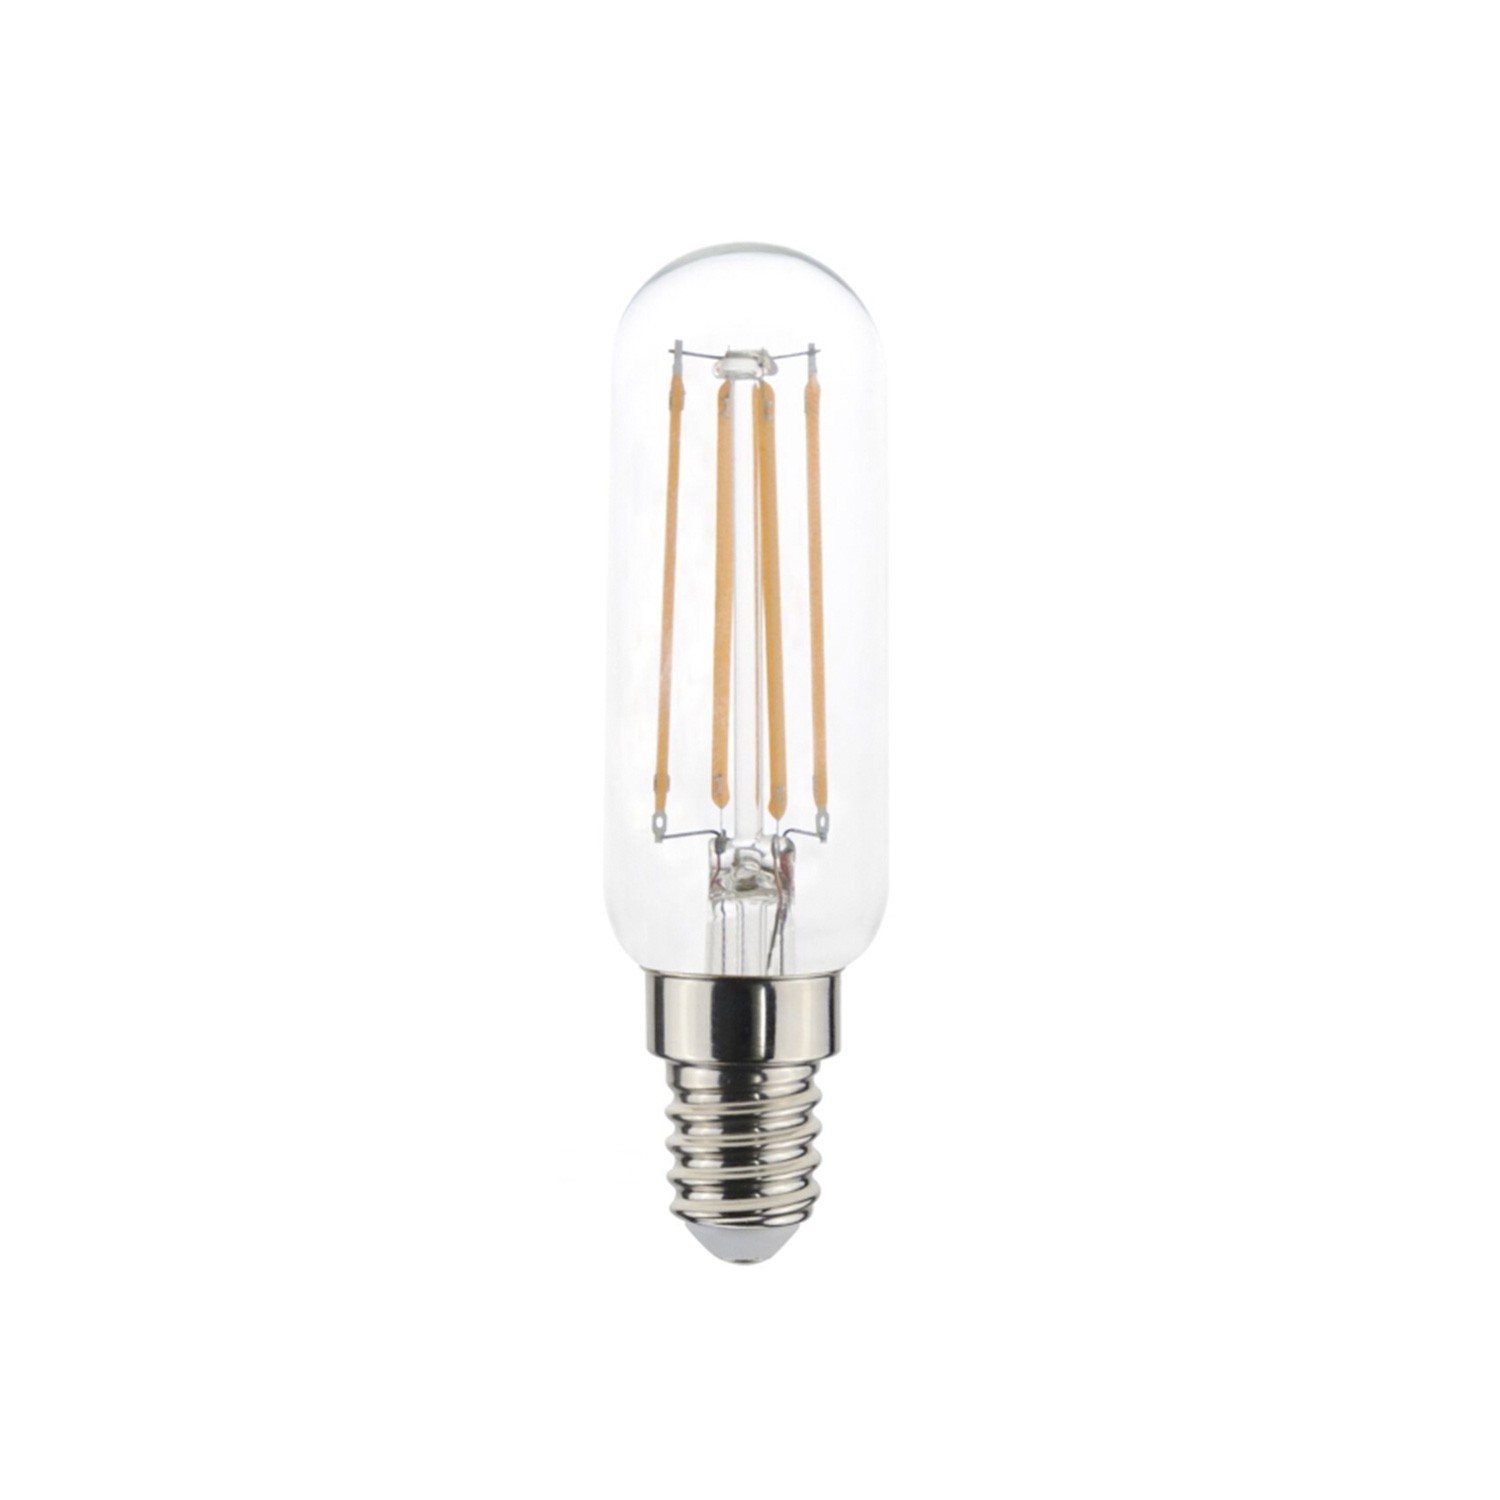 LED buislamp 4,5W 470Lm E14 Helder Dimbaar